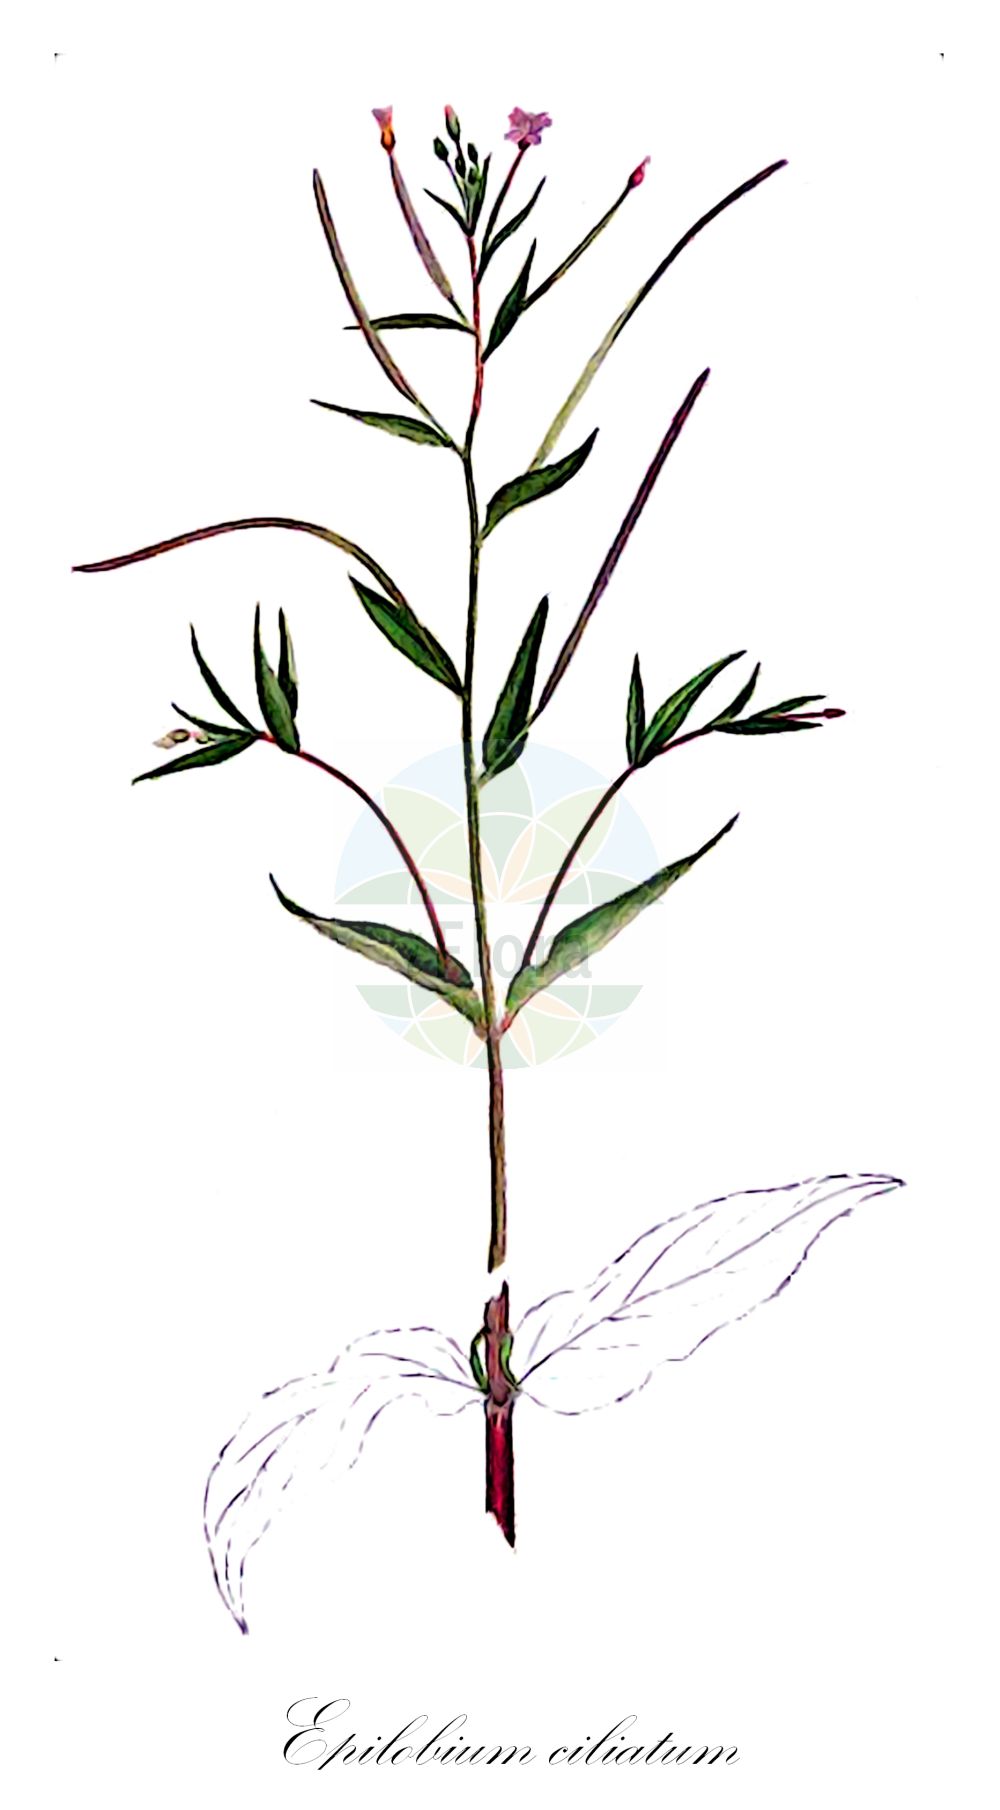 Historische Abbildung von Epilobium ciliatum (Drüsiges Weidenröschen - American Willowherb). Das Bild zeigt Blatt, Bluete, Frucht und Same. ---- Historical Drawing of Epilobium ciliatum (Drüsiges Weidenröschen - American Willowherb). The image is showing leaf, flower, fruit and seed.(Epilobium ciliatum,Drüsiges Weidenröschen,American Willowherb,Epilobium americanum,Epilobium ciliatum,Druesiges Weidenroeschen,Amerikanisches Weidenroeschen,Druesen-Weidenroeschen,American Willowherb,Fringed Willowherb,Epilobium,Weidenröschen,Willowherb,Onagraceae,Nachtkerzengewächse,Evening Primrose family,Blatt,Bluete,Frucht,Same,leaf,flower,fruit,seed,Sharp (1888-1910))